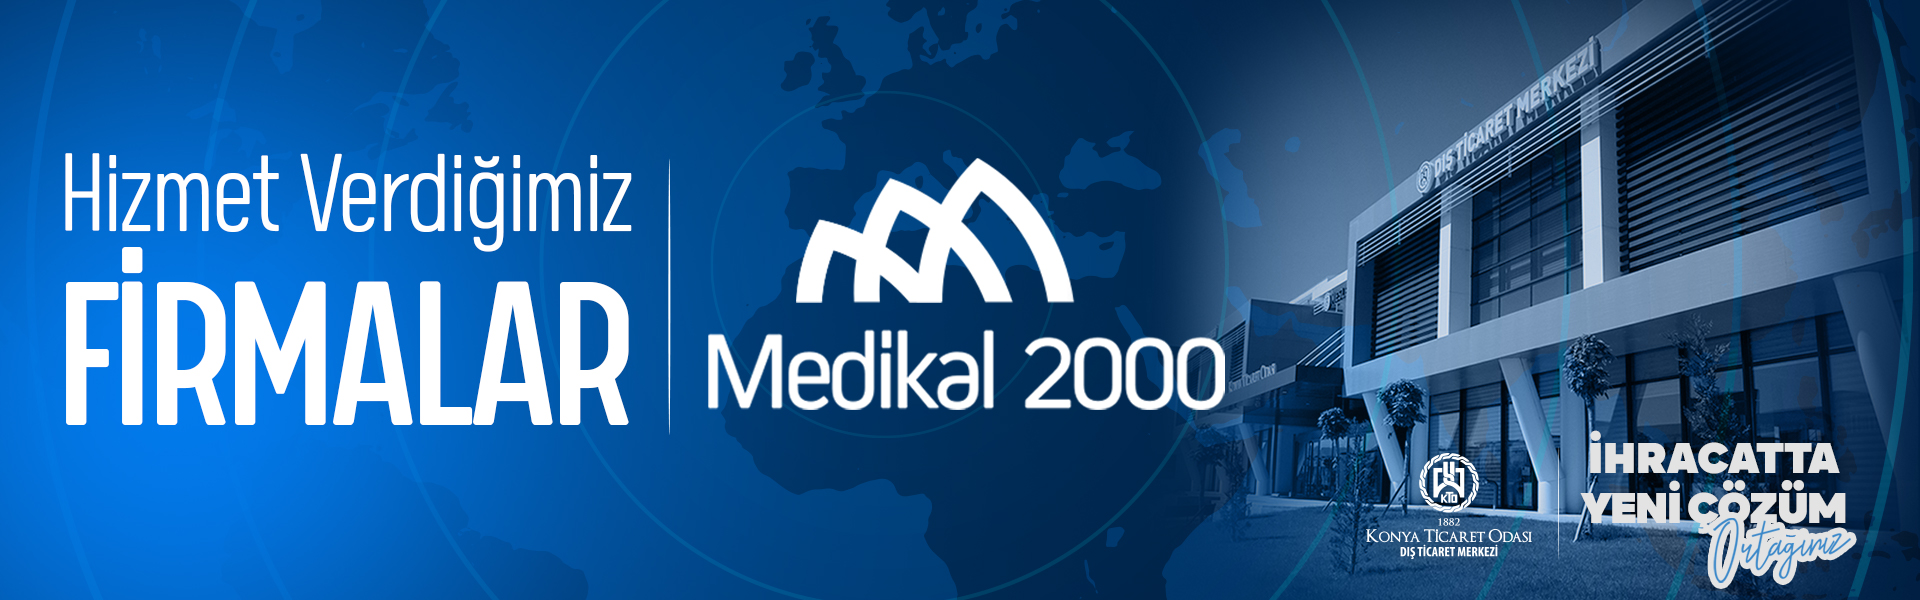 Hizmet Verdiğimiz Firmalar Medikal 2000